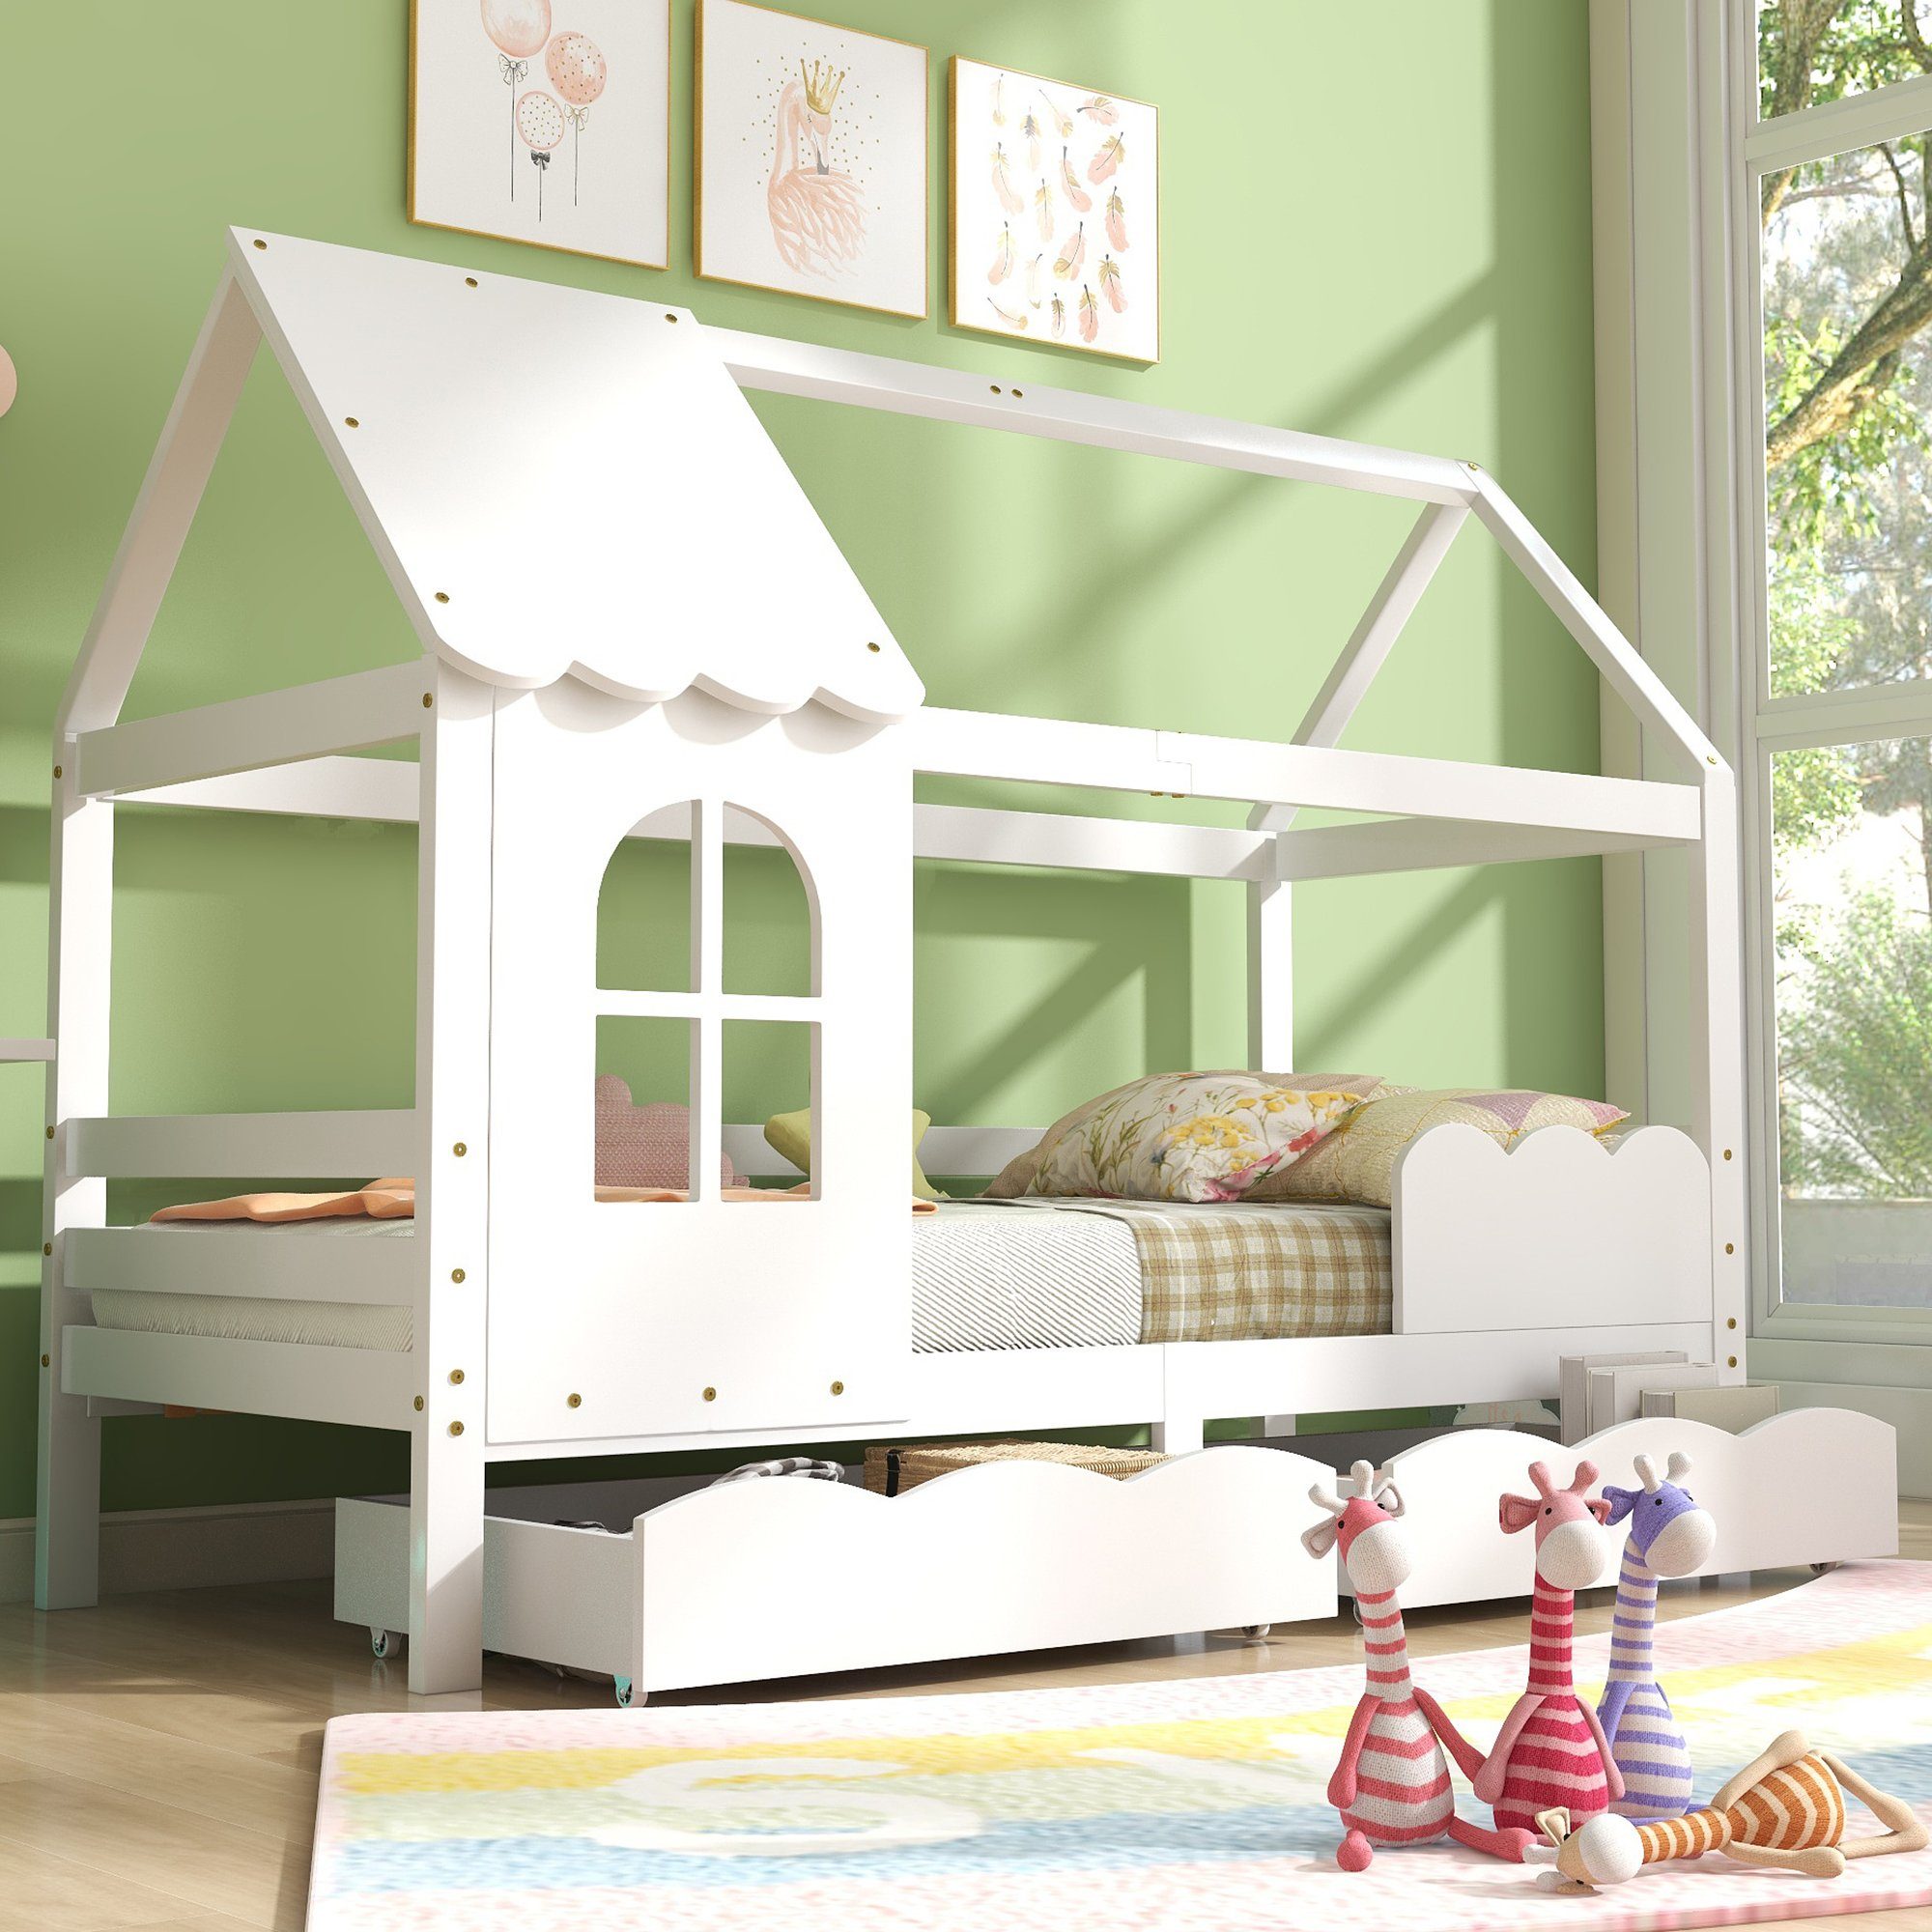 Flieks Kinderbett (mit 2 Schubladen, Rausfallschutz und Lattenrost), Hausbett Kiefernholz Jugendbett 90x200cm